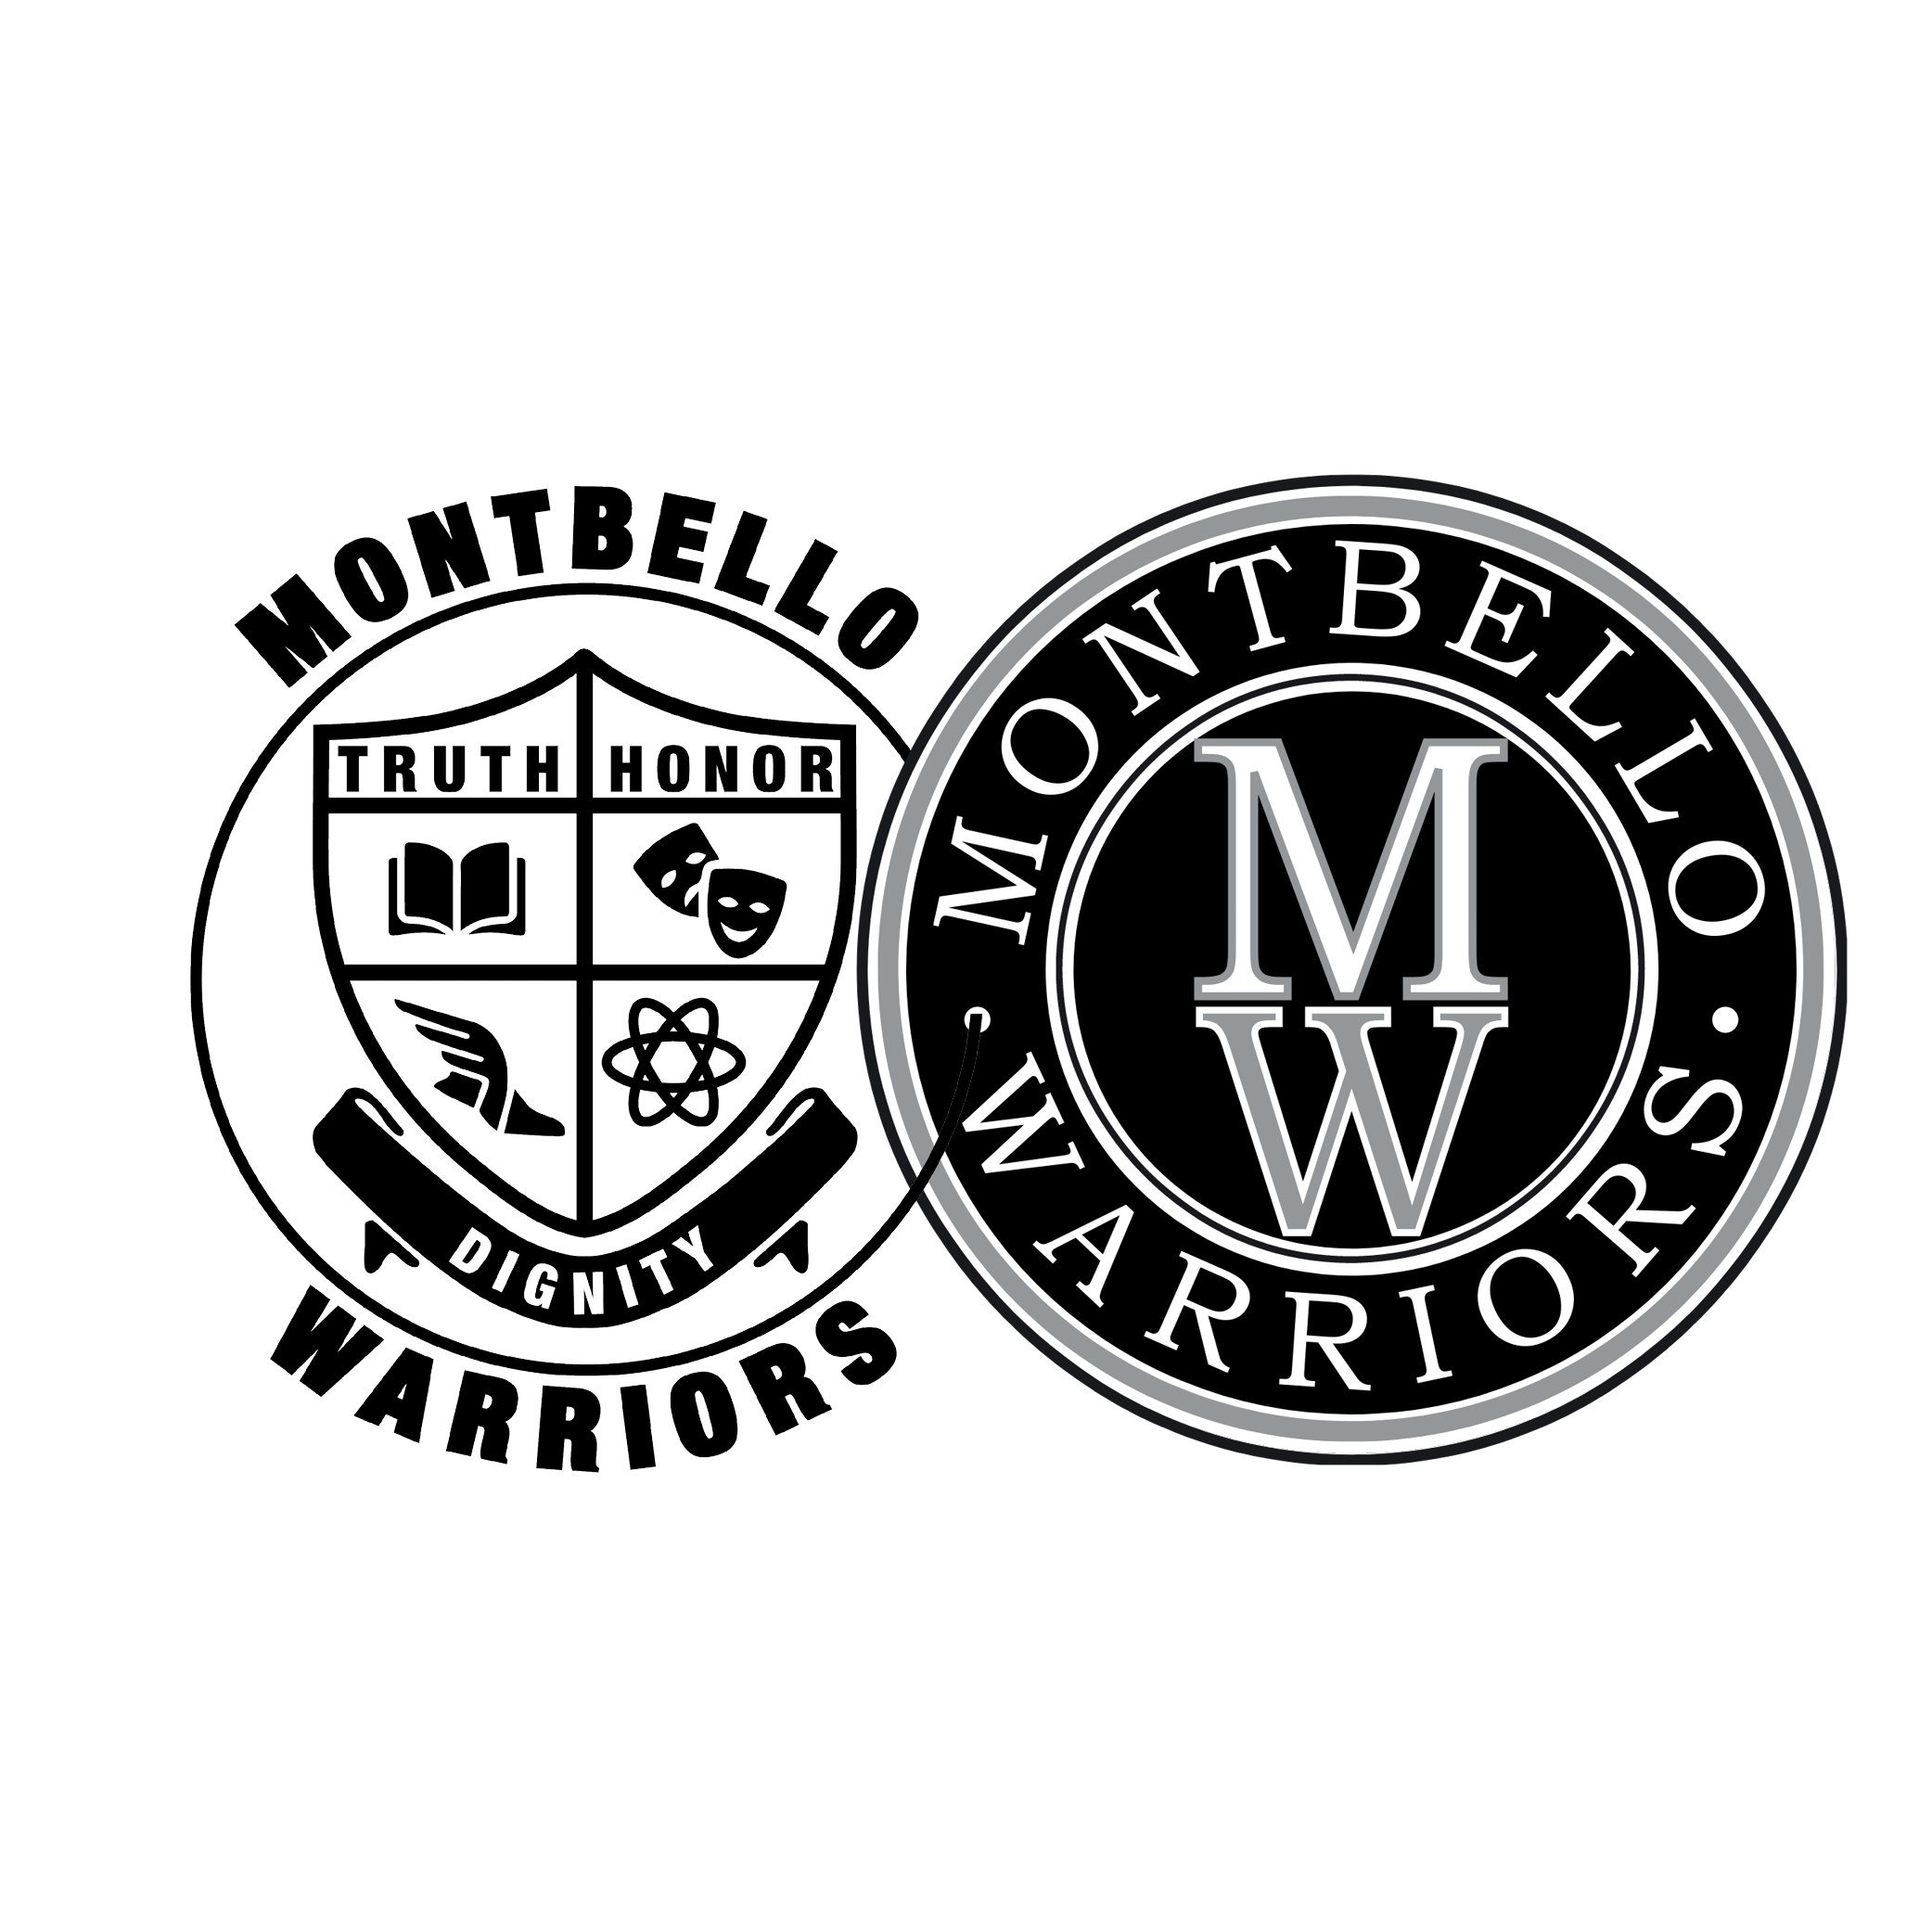 Montbello Warriors logo